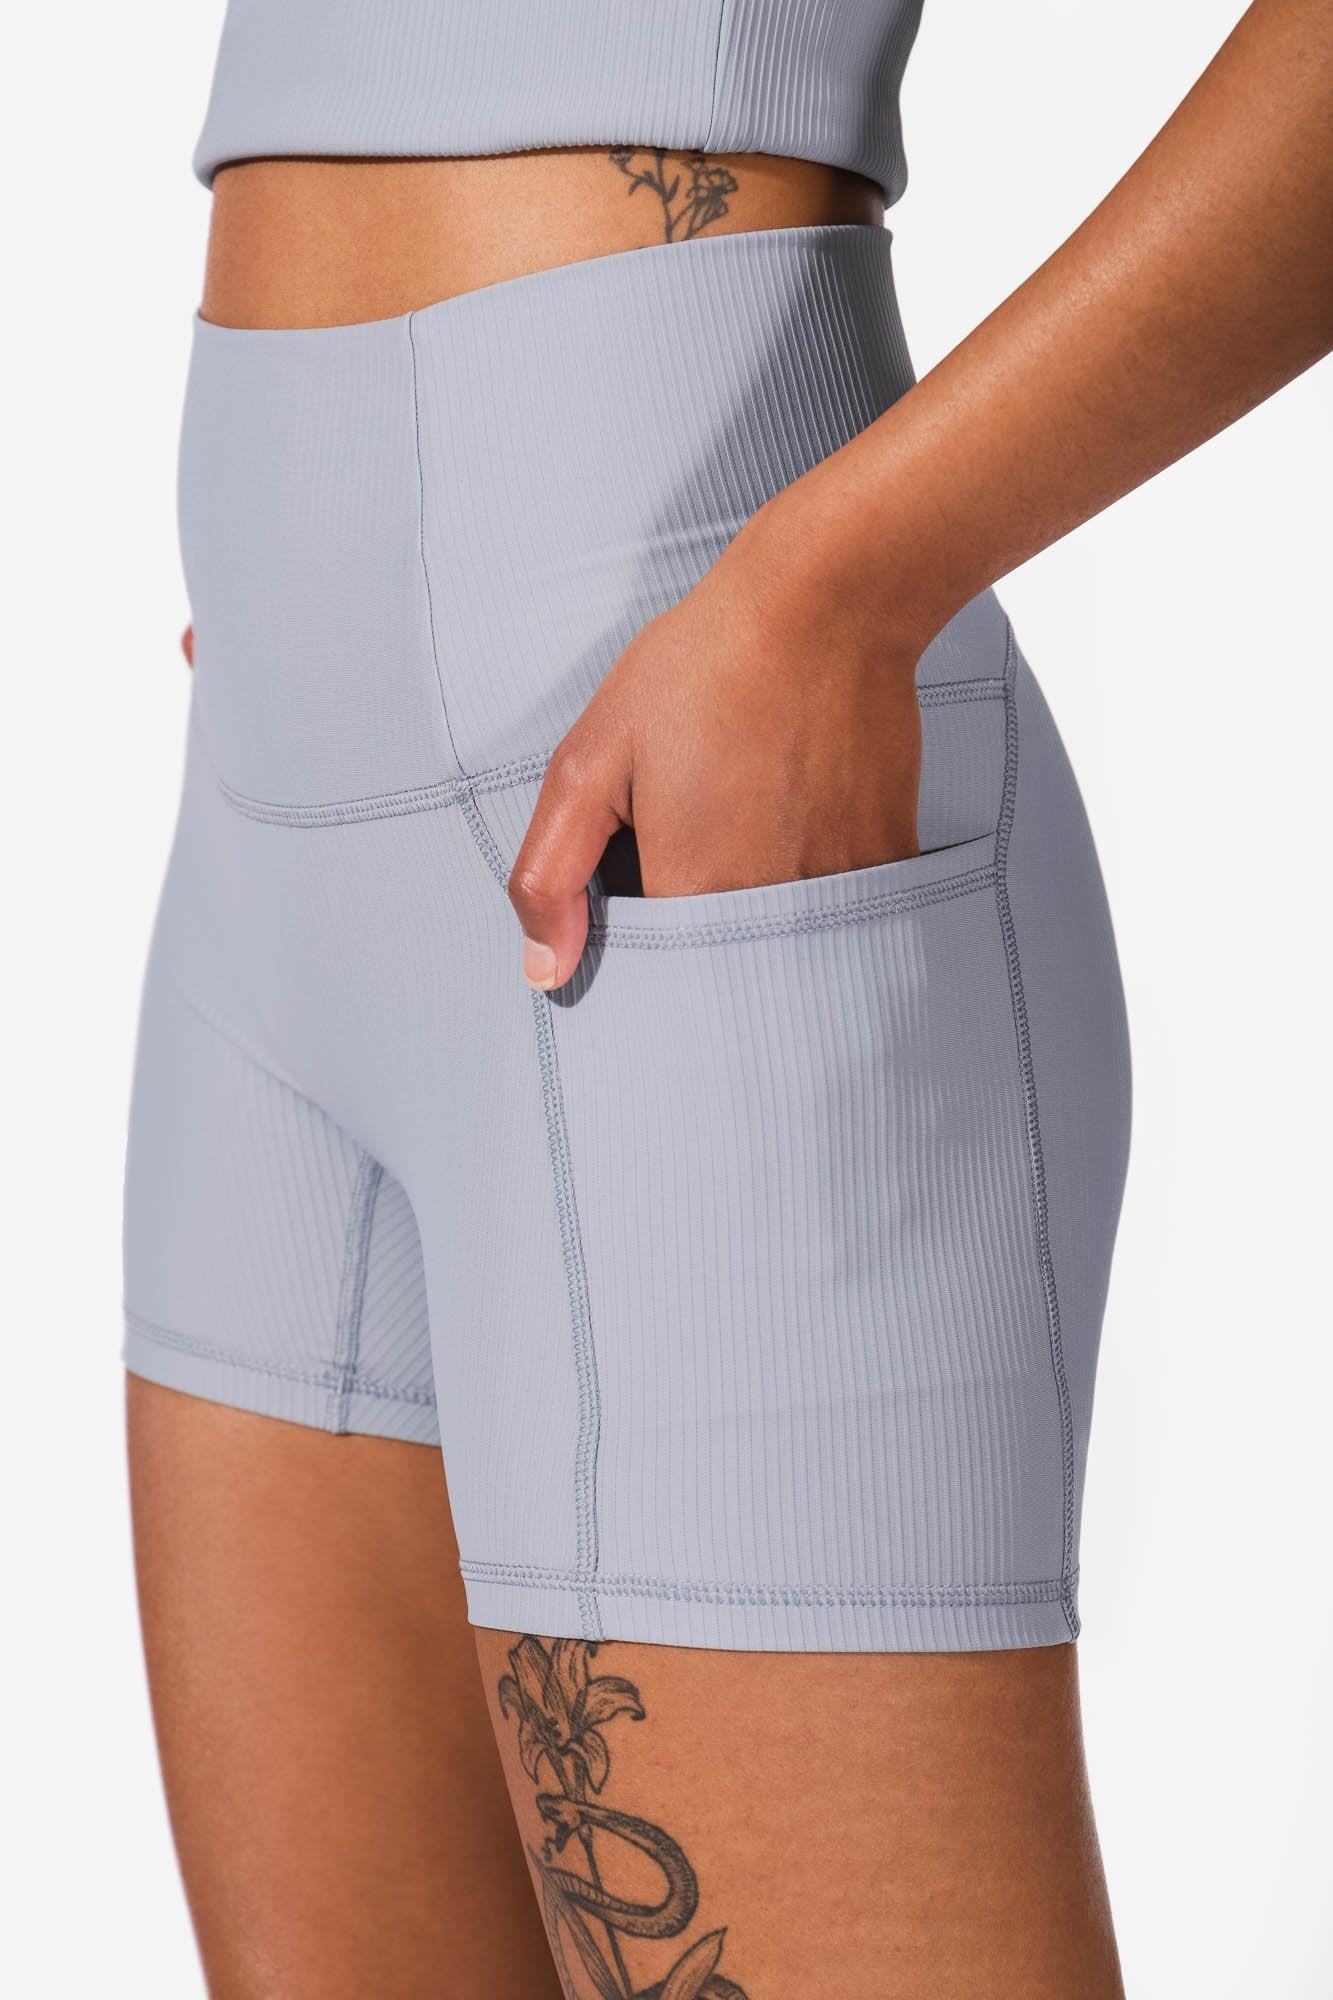 WOMBTM081-BLU 0614 Women's shorts Jed North 